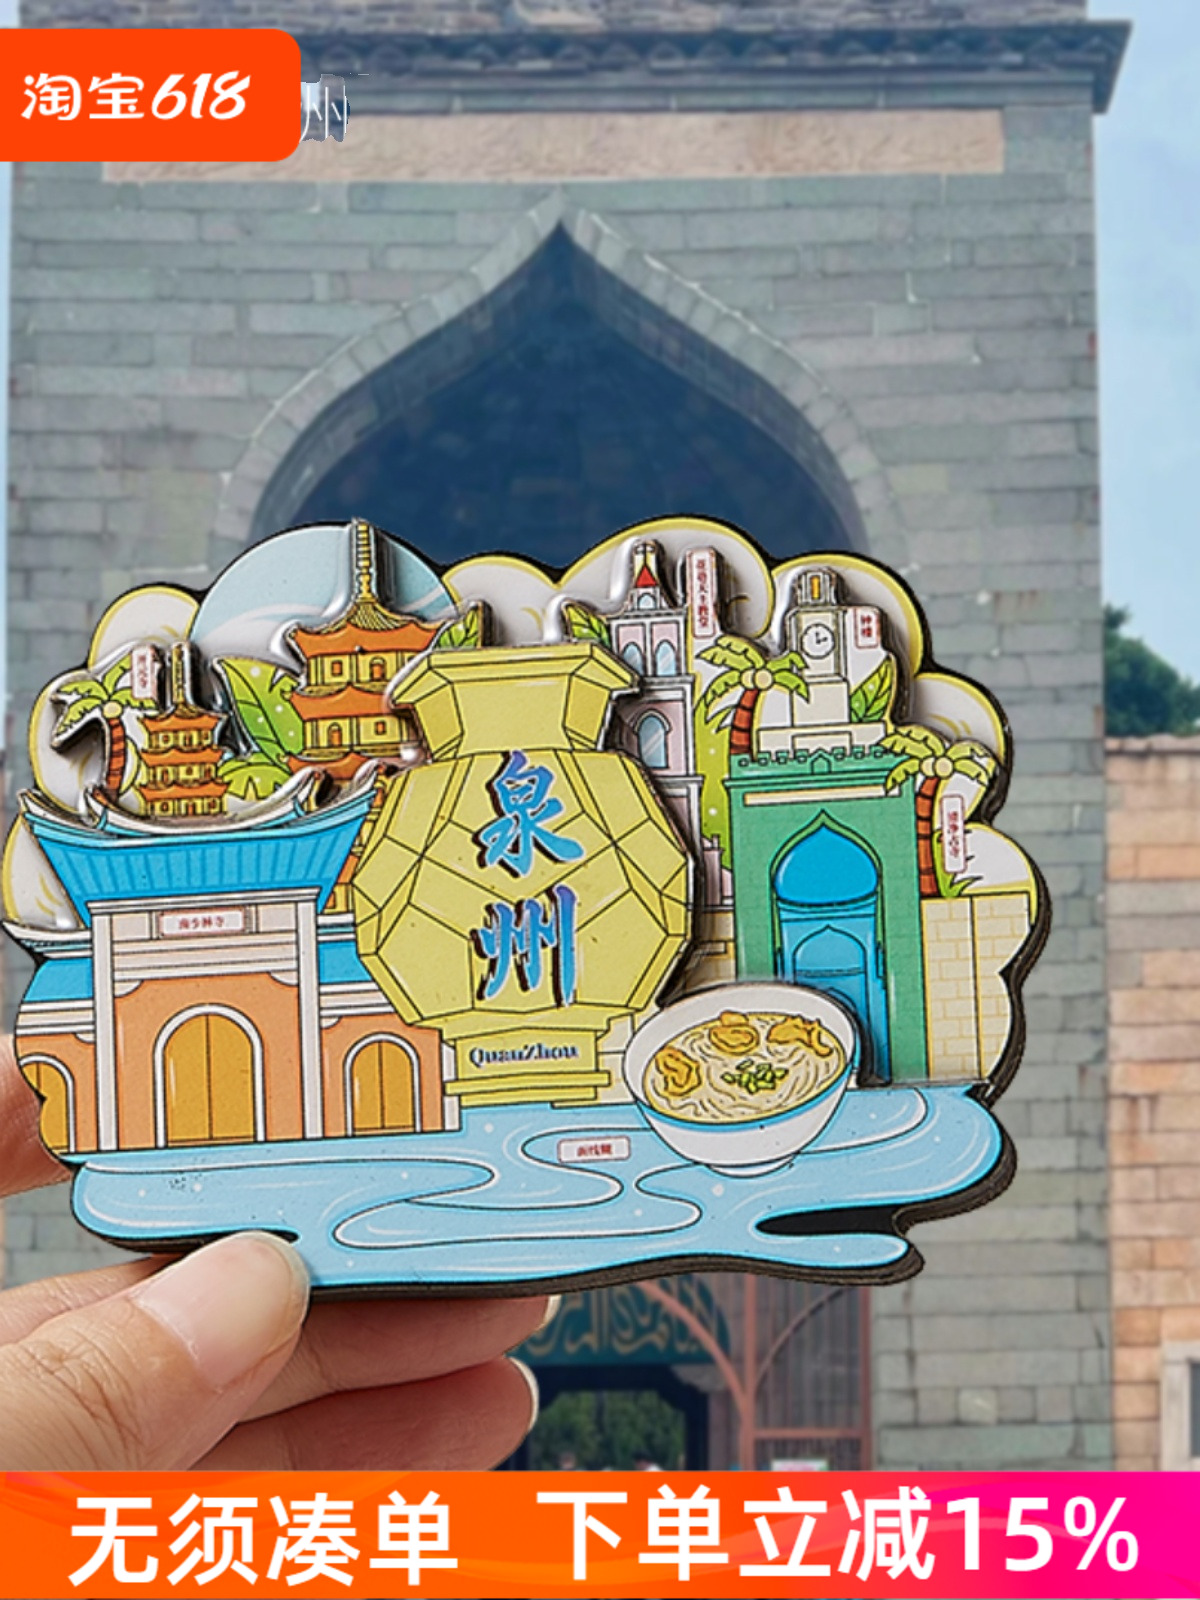 。木目iwood 文创个性立体城市冰箱贴 泉州南少林寺旅游景点磁吸